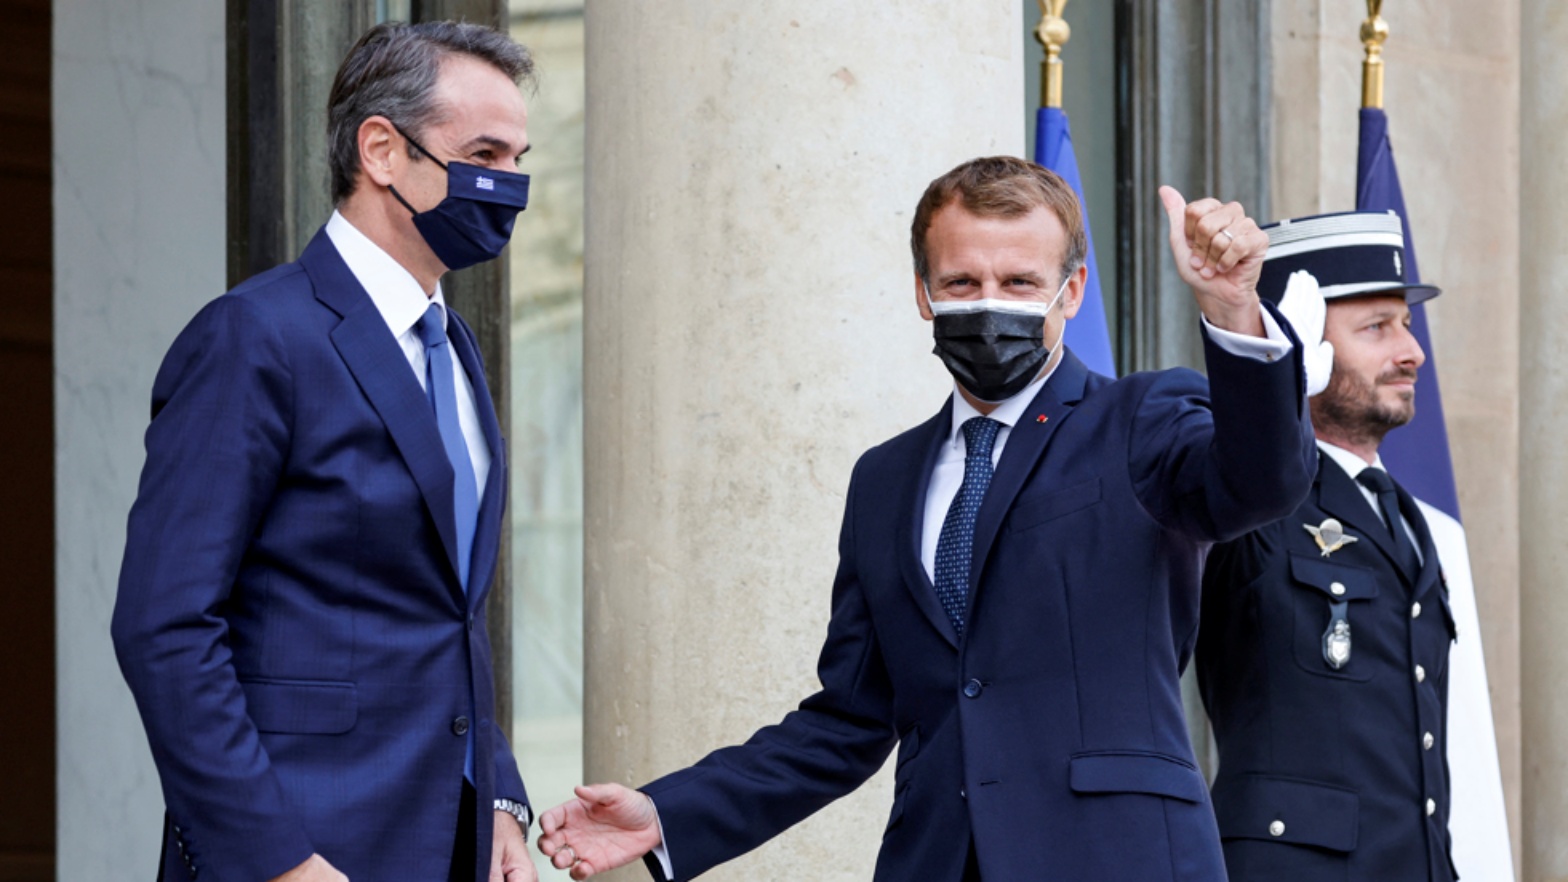 الرئيس الفرنسي إيمانويل ماكرون (إلى اليمين) ورئيس الوزراء اليوناني كيرياكوس ميتسوتاكيس في قصر الإليزيه في باريس. في 28 أيلول/ سبتمبر 2021.